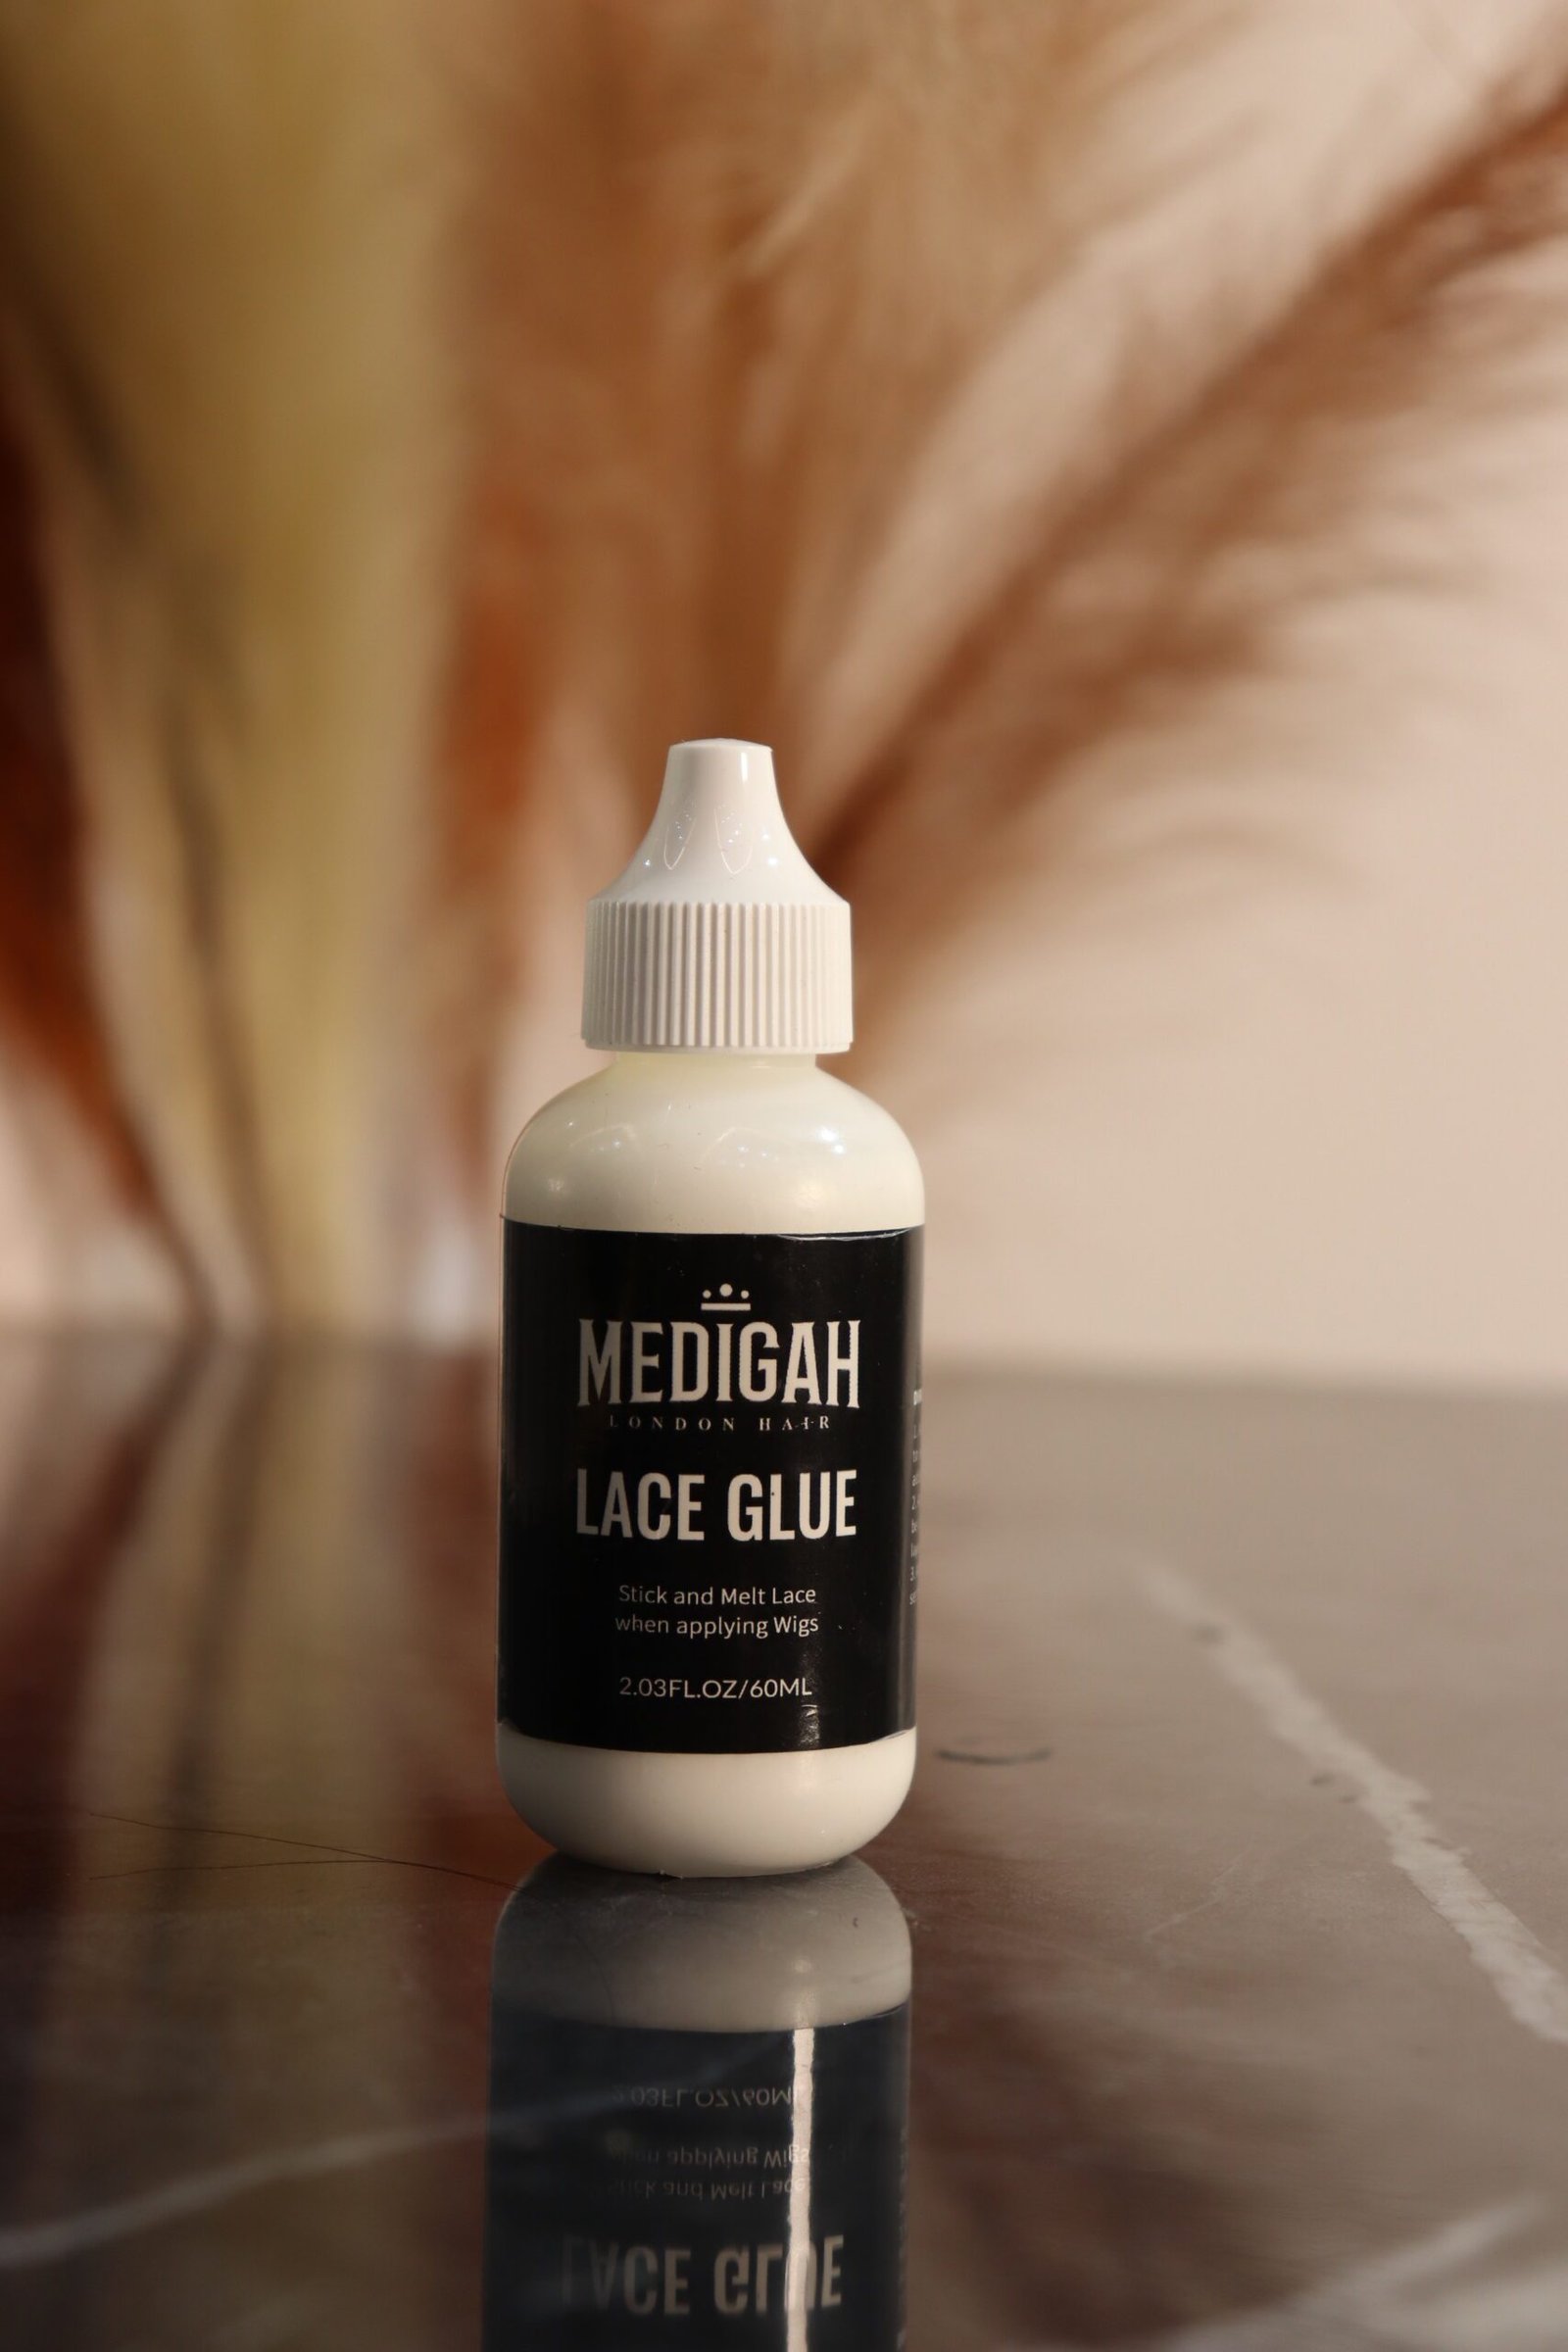 MLH Lace Glue  Medigah London Hair